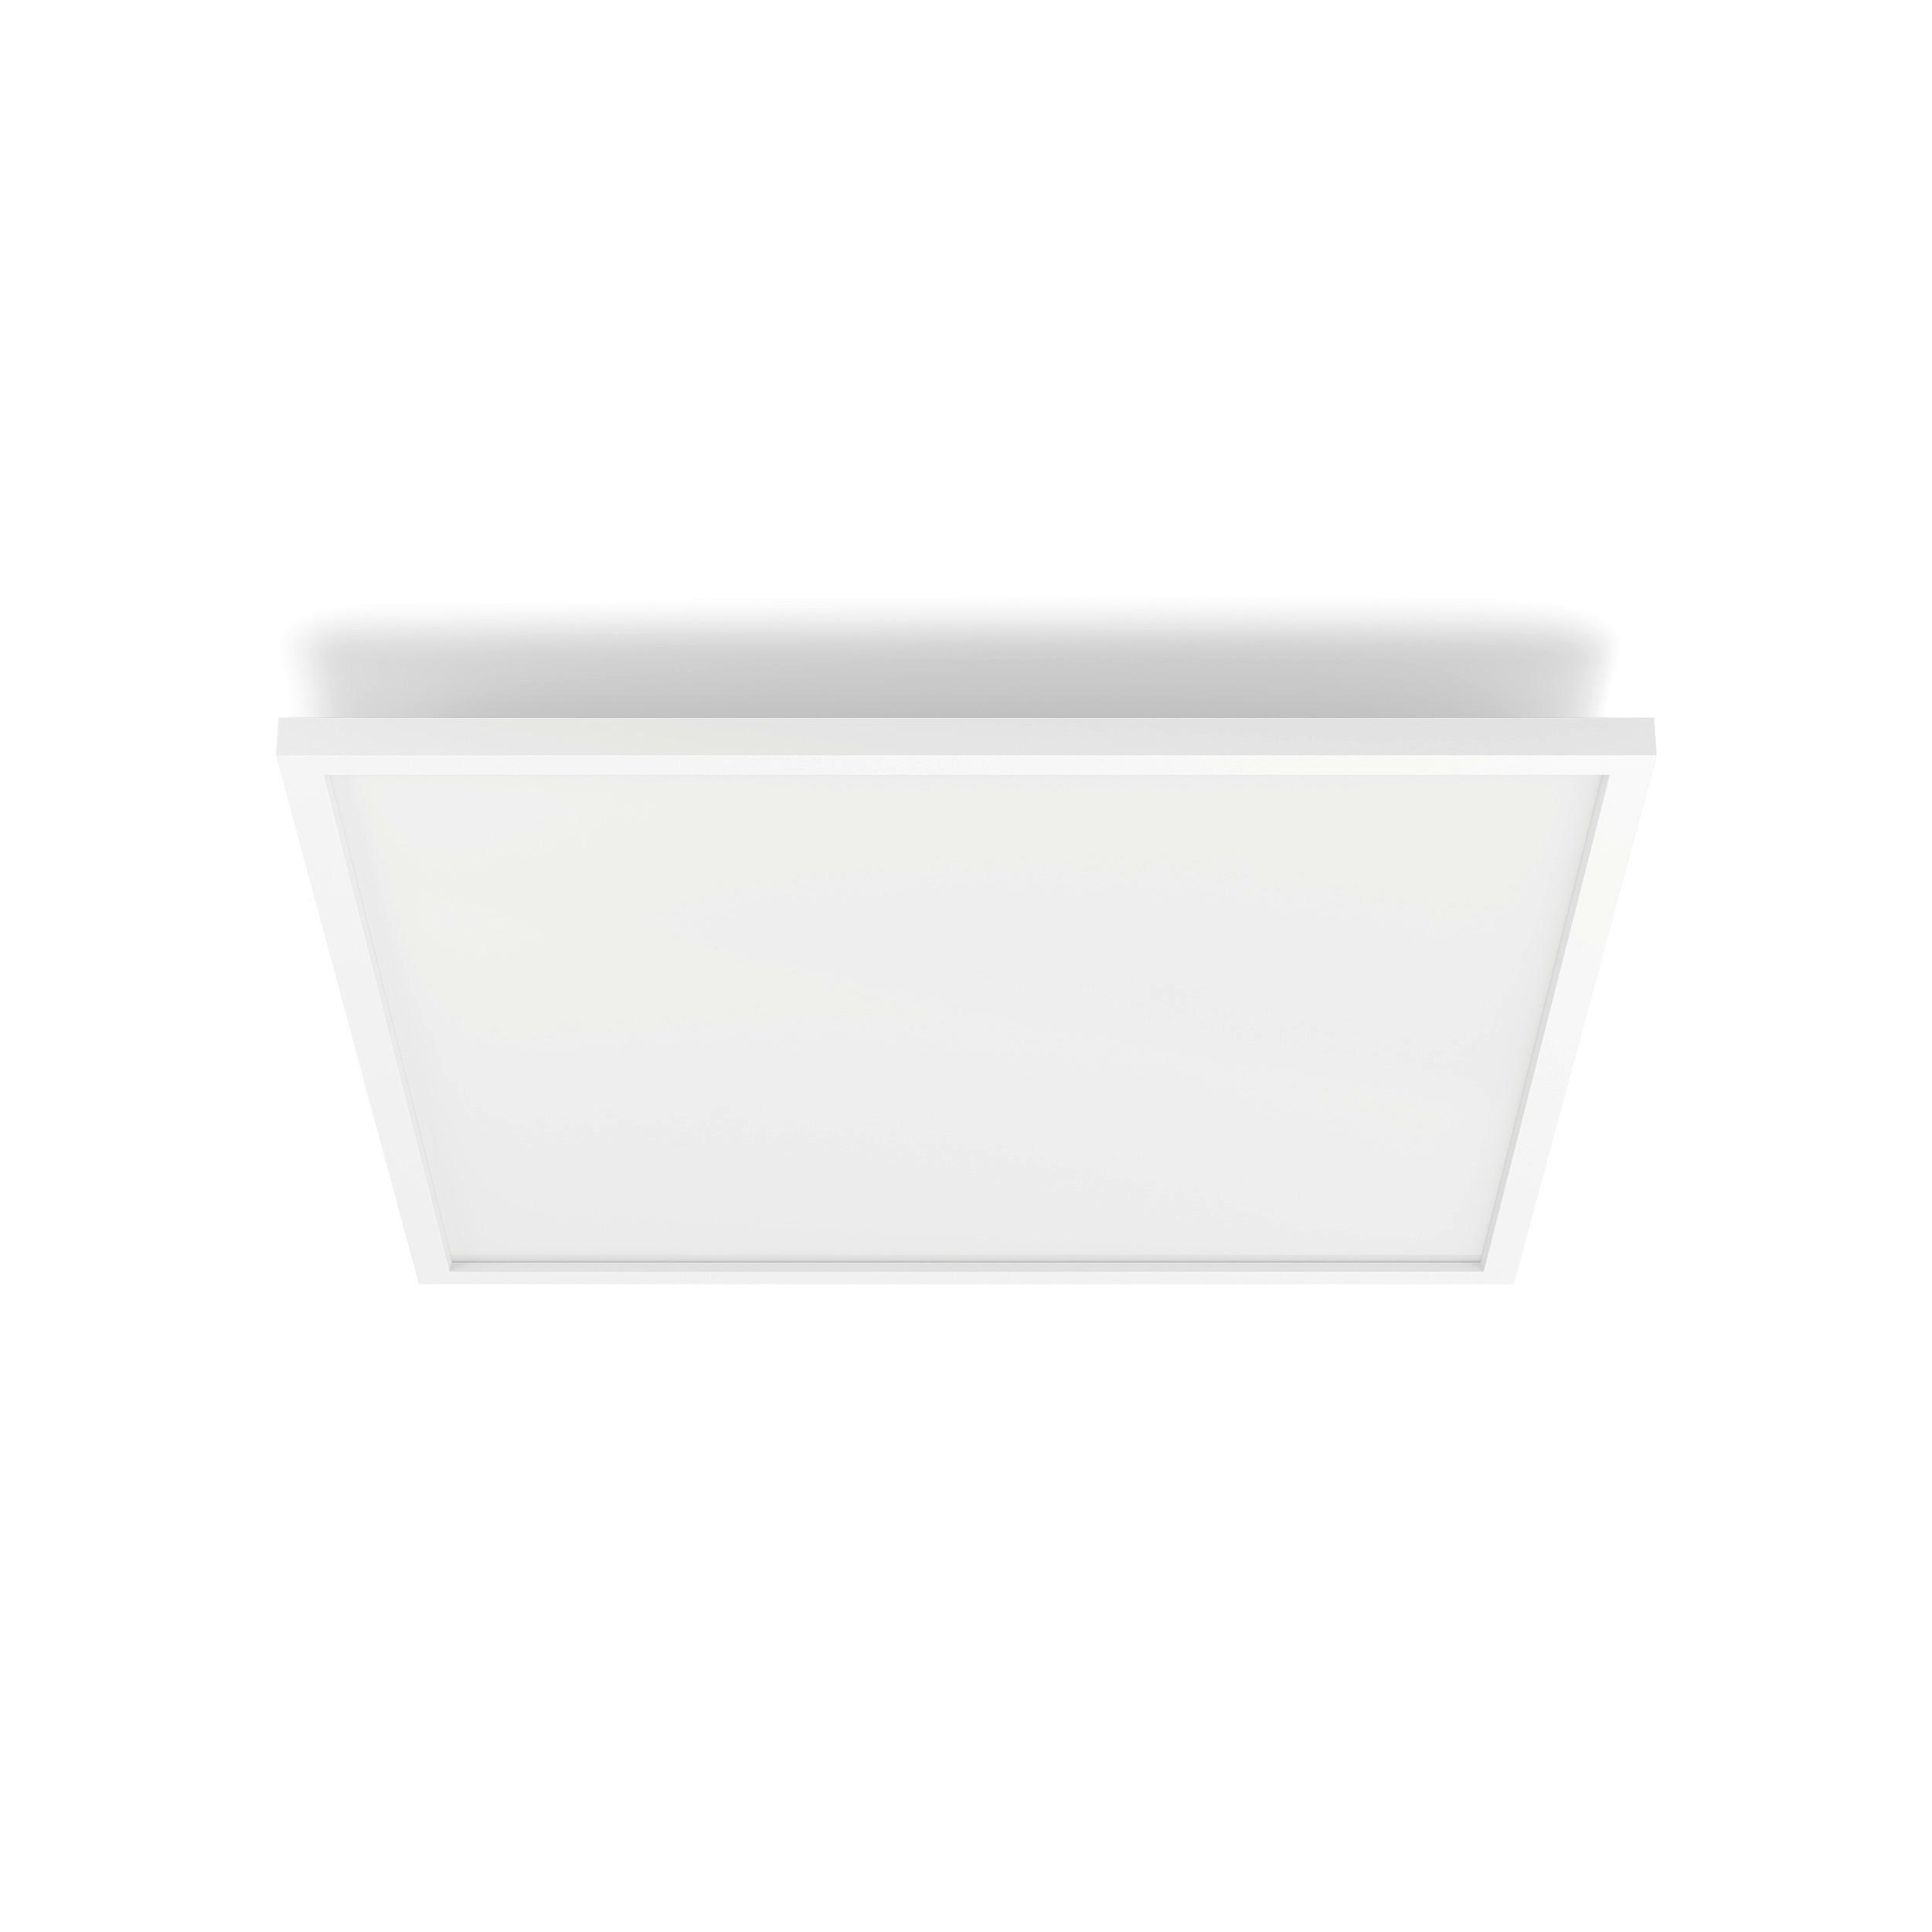 LED-PANEEL 60/4,8 cm    - Weiß, Basics, Metall (60/4,8cm) - Philips HUE